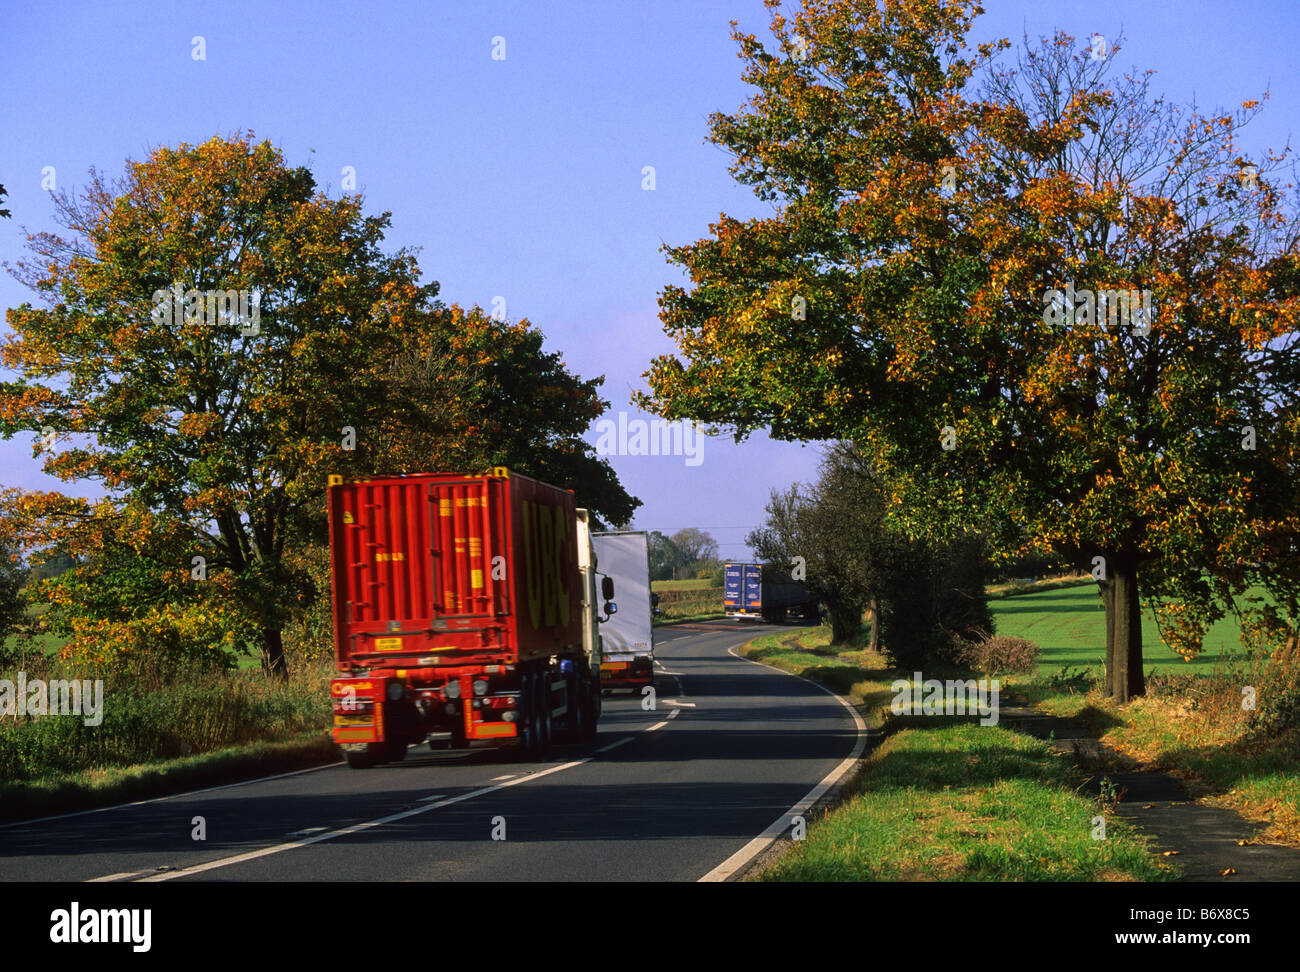 Lorrys voyageant sur la route à travers les arbres aux couleurs de l'automne près de Leeds Yorkshire UK Banque D'Images